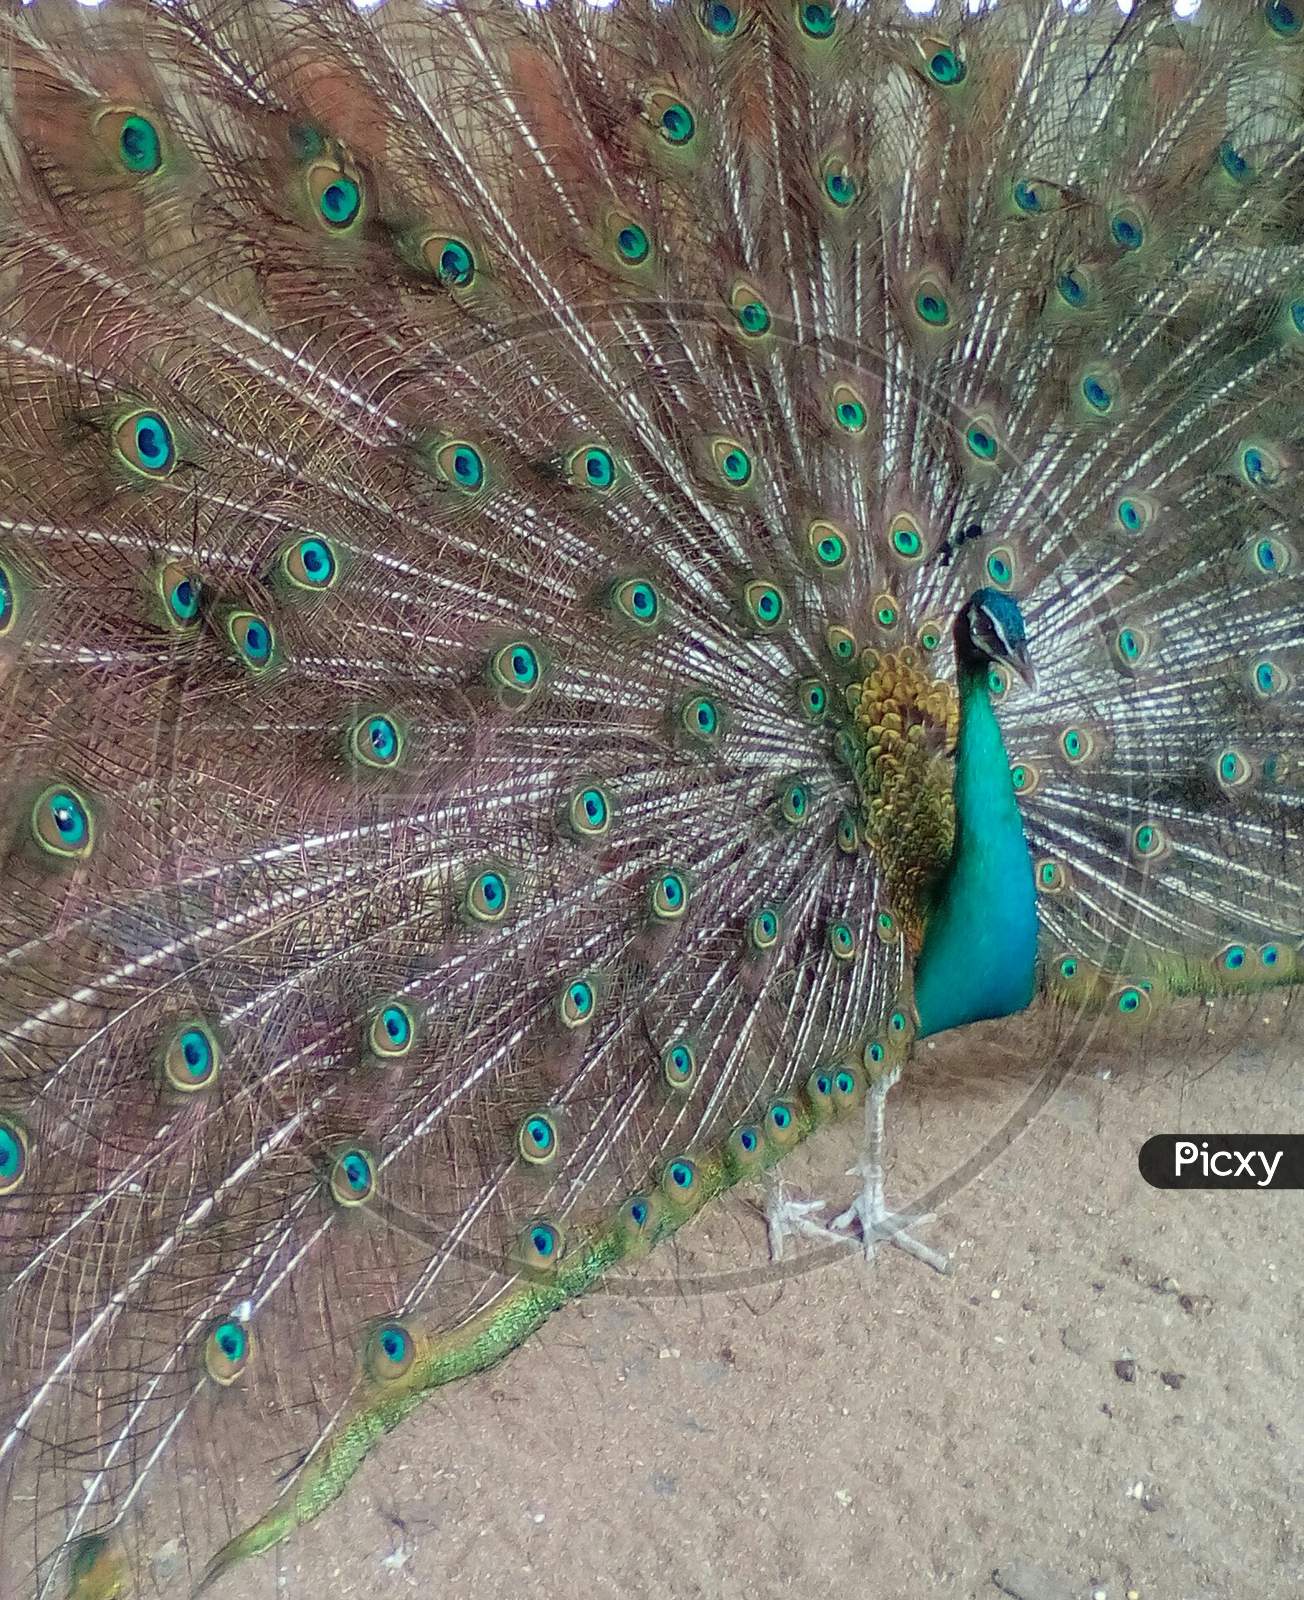 Peacock dancing